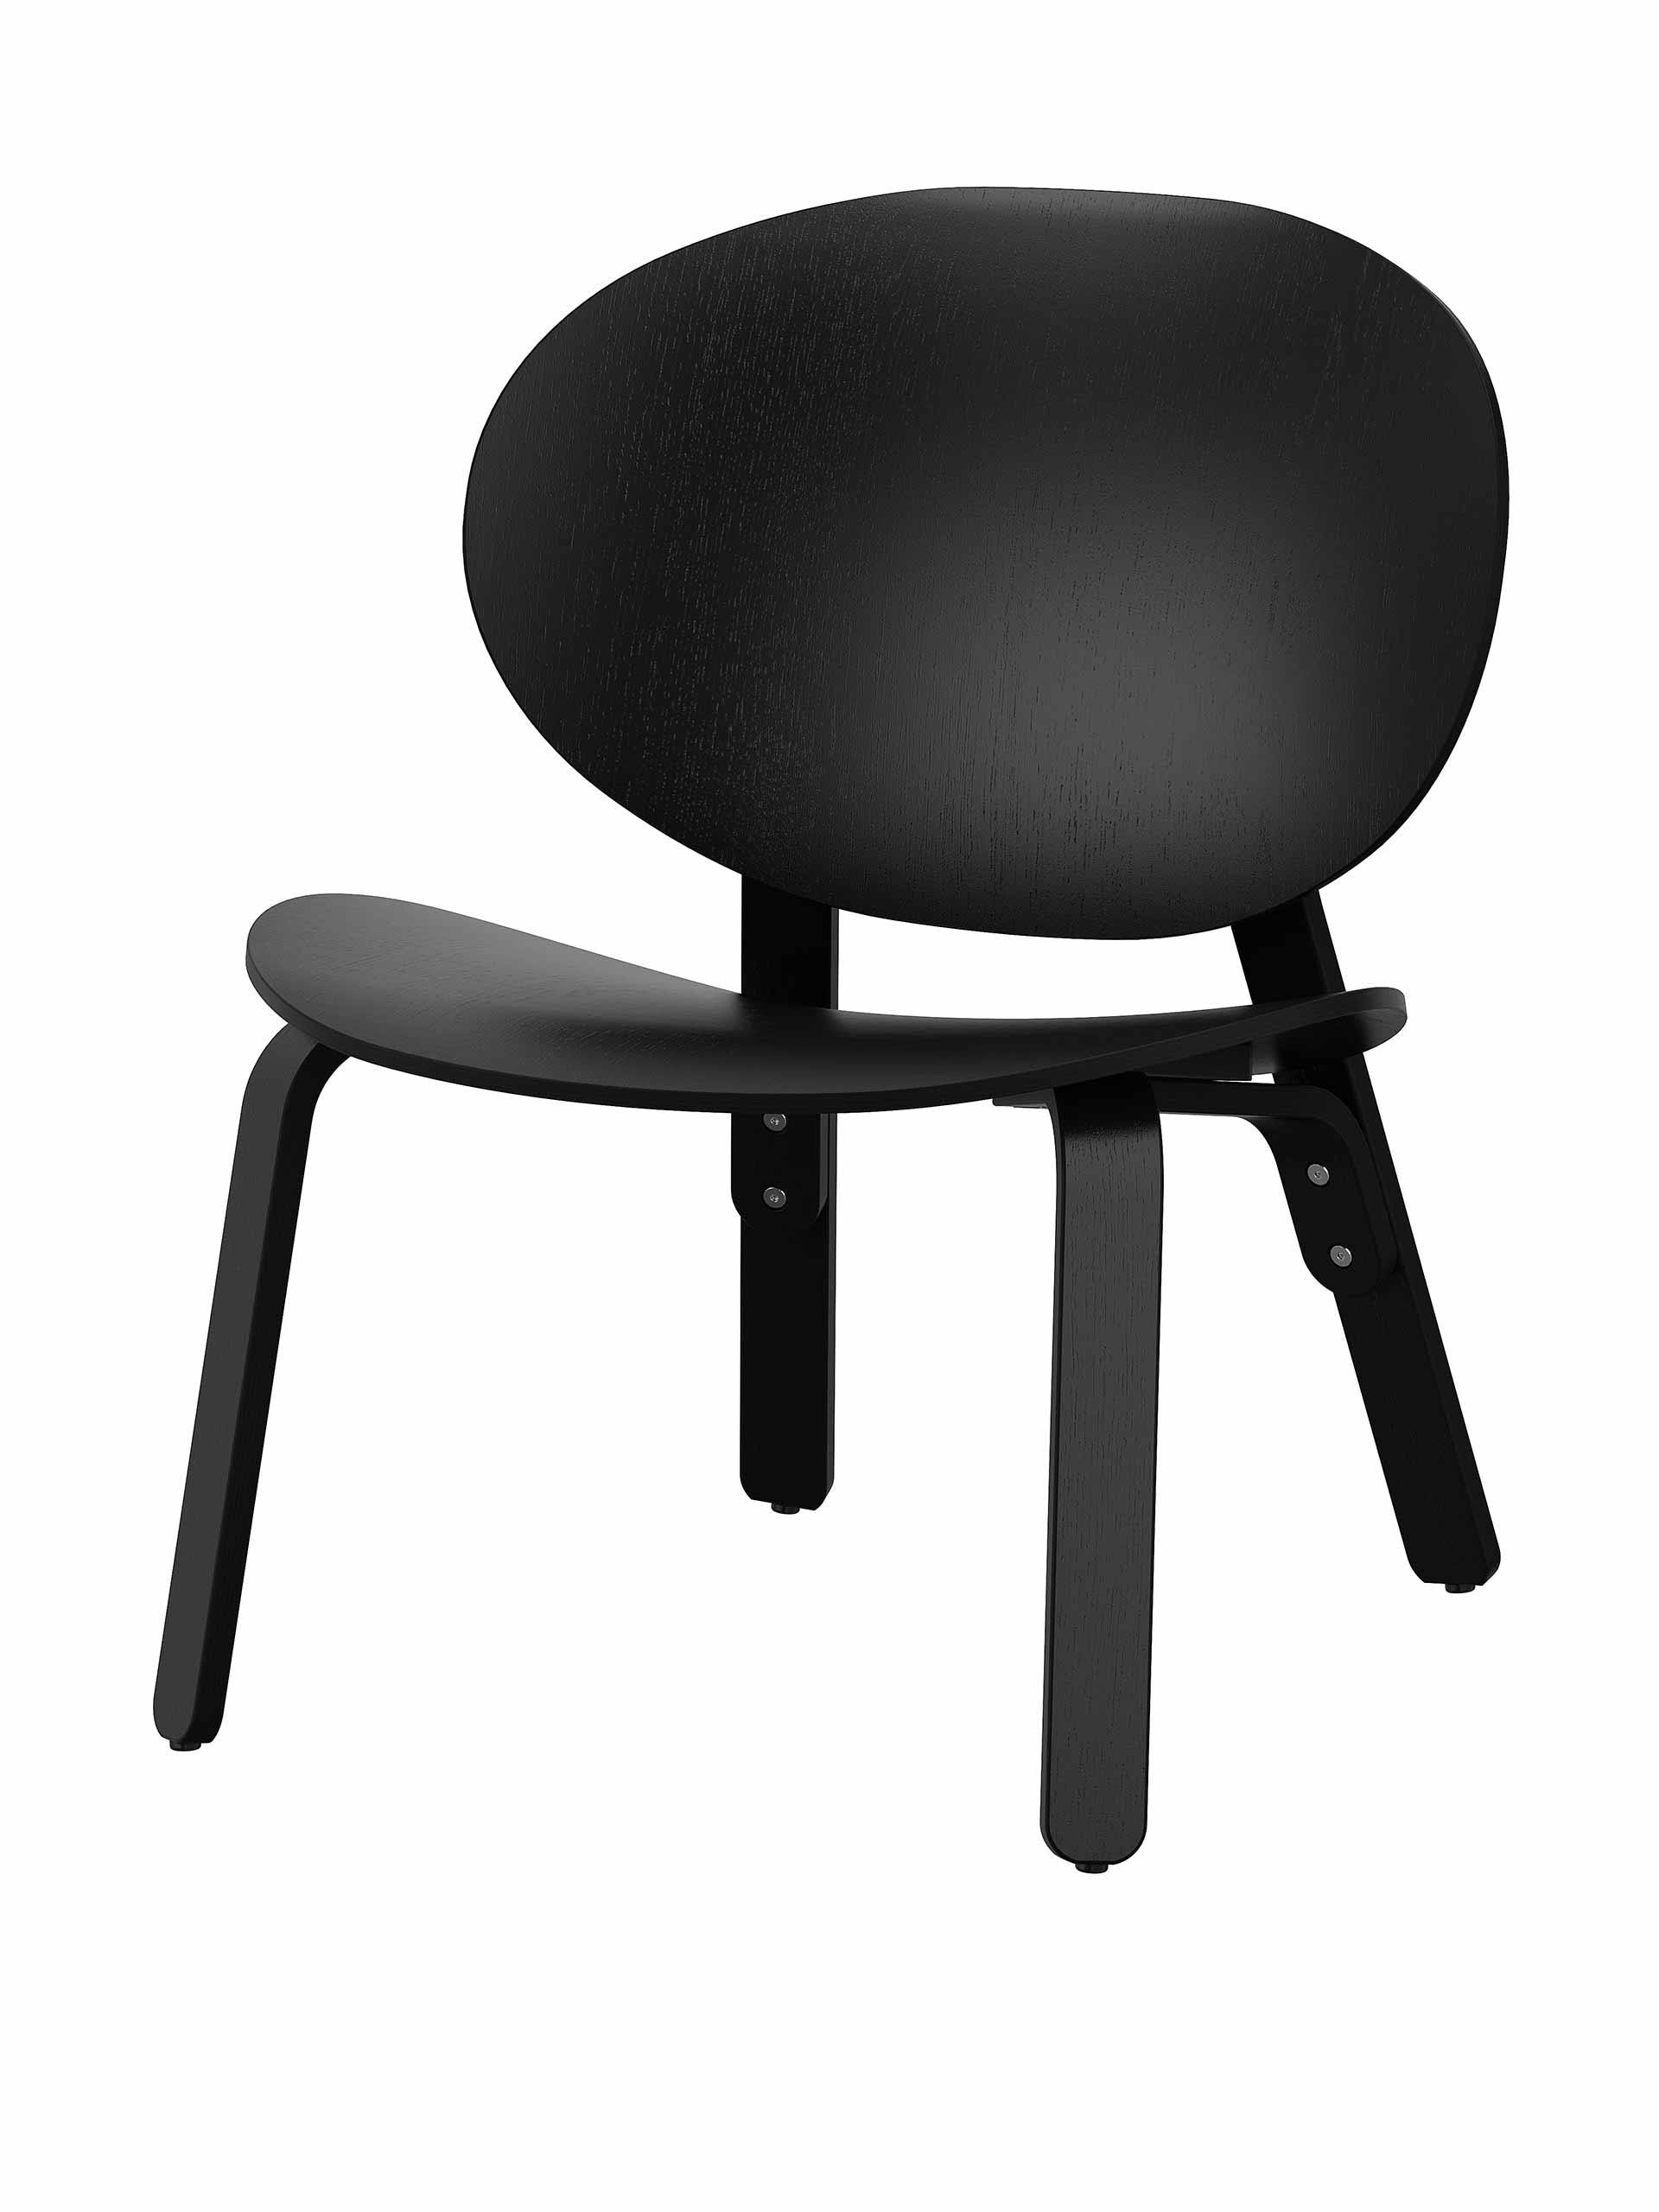 Black stained oak veneer chair